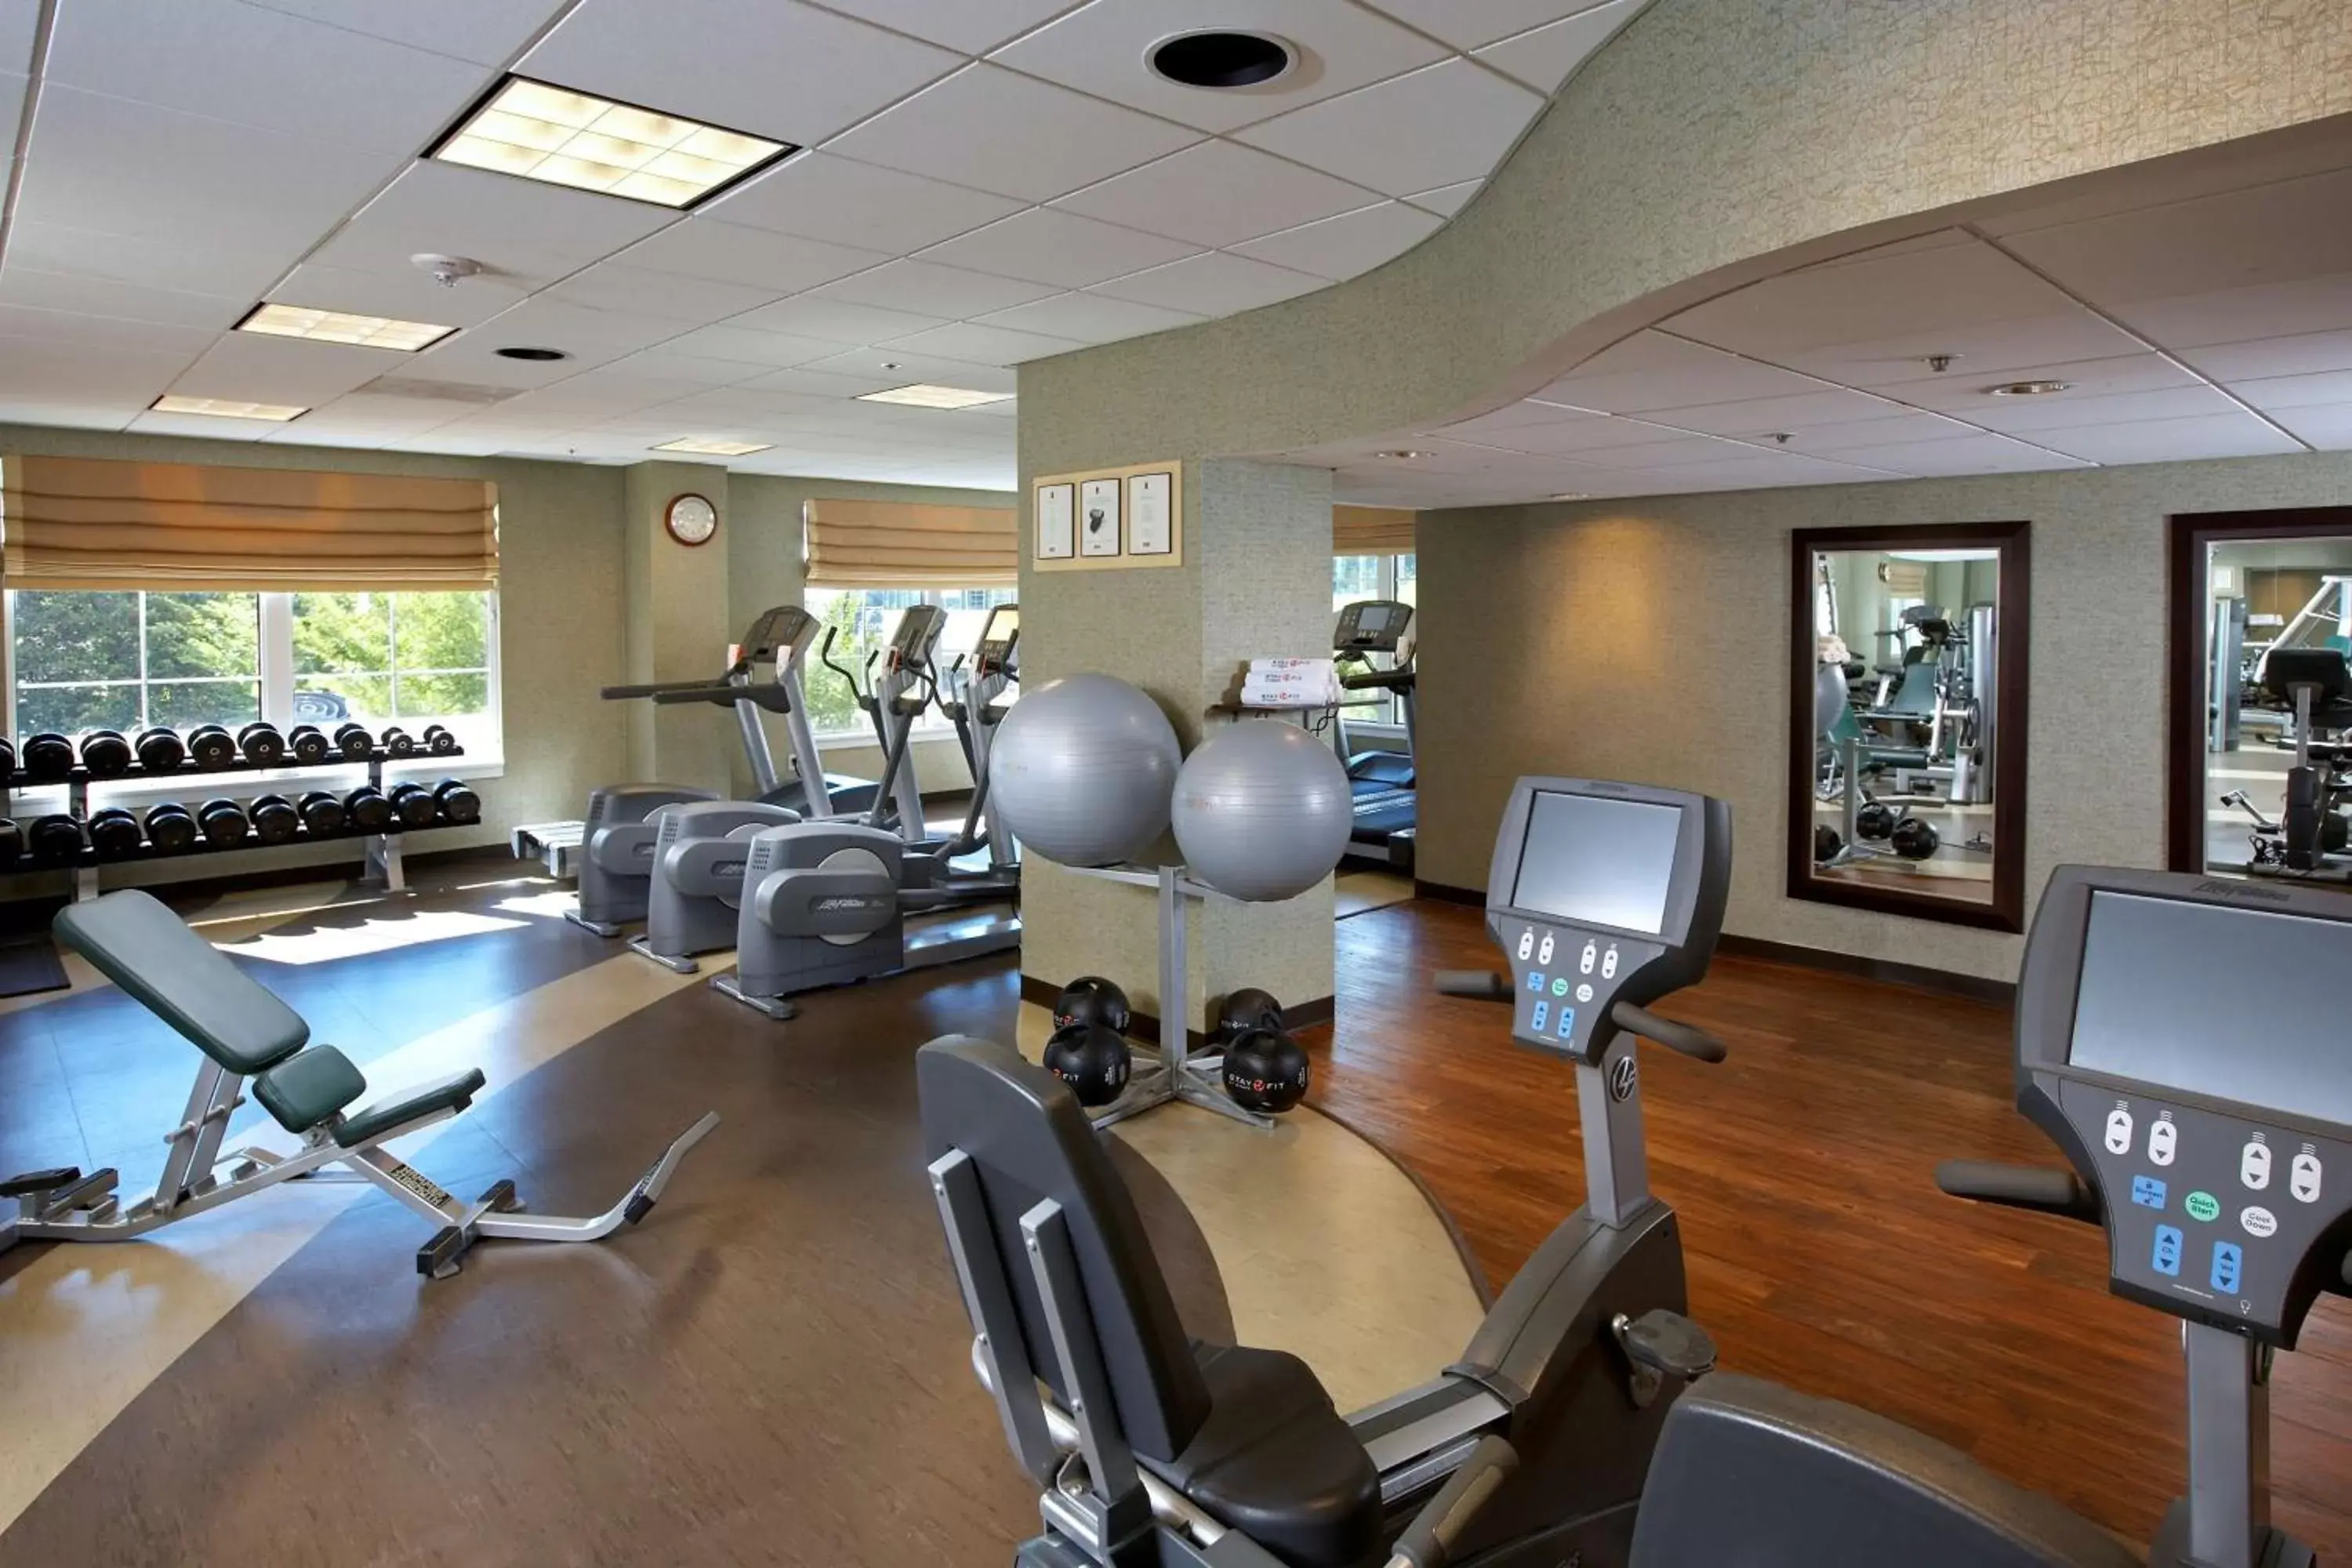 Fitness centre/facilities, Fitness Center/Facilities in Grand Hyatt Atlanta in Buckhead